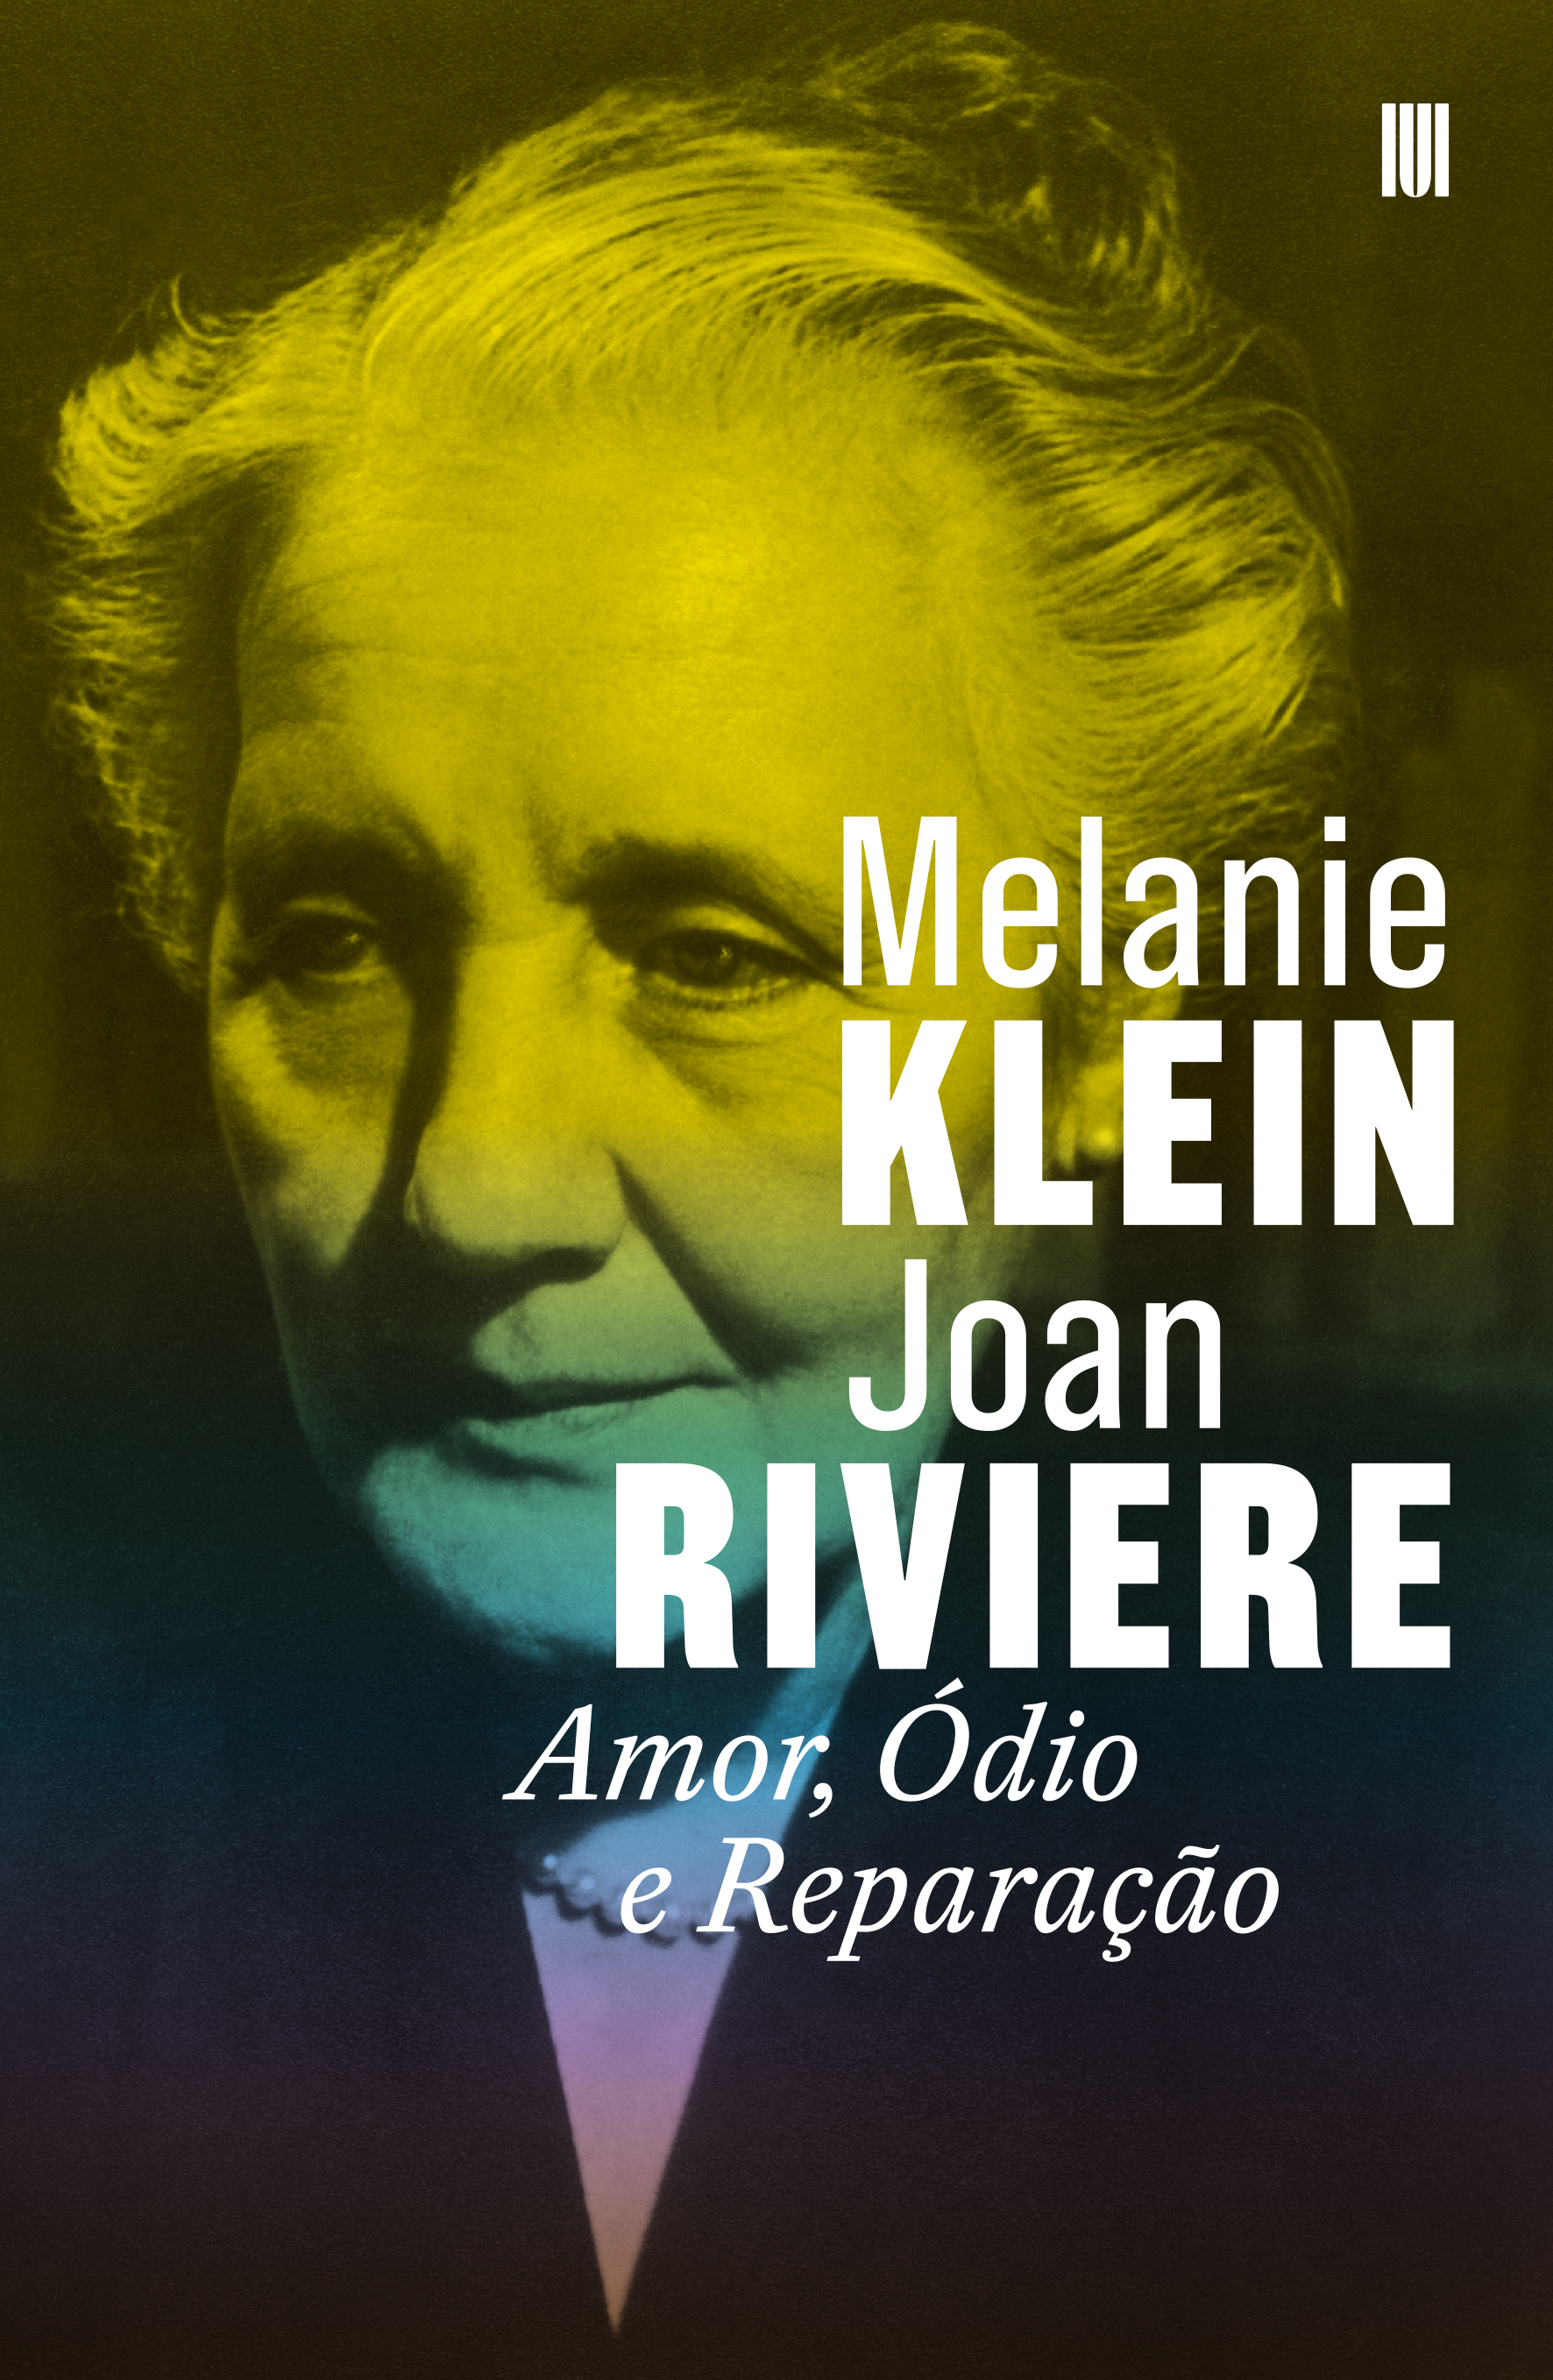 Amor, Ódio e Reparação, de Melanie Klein e Joan Riviere